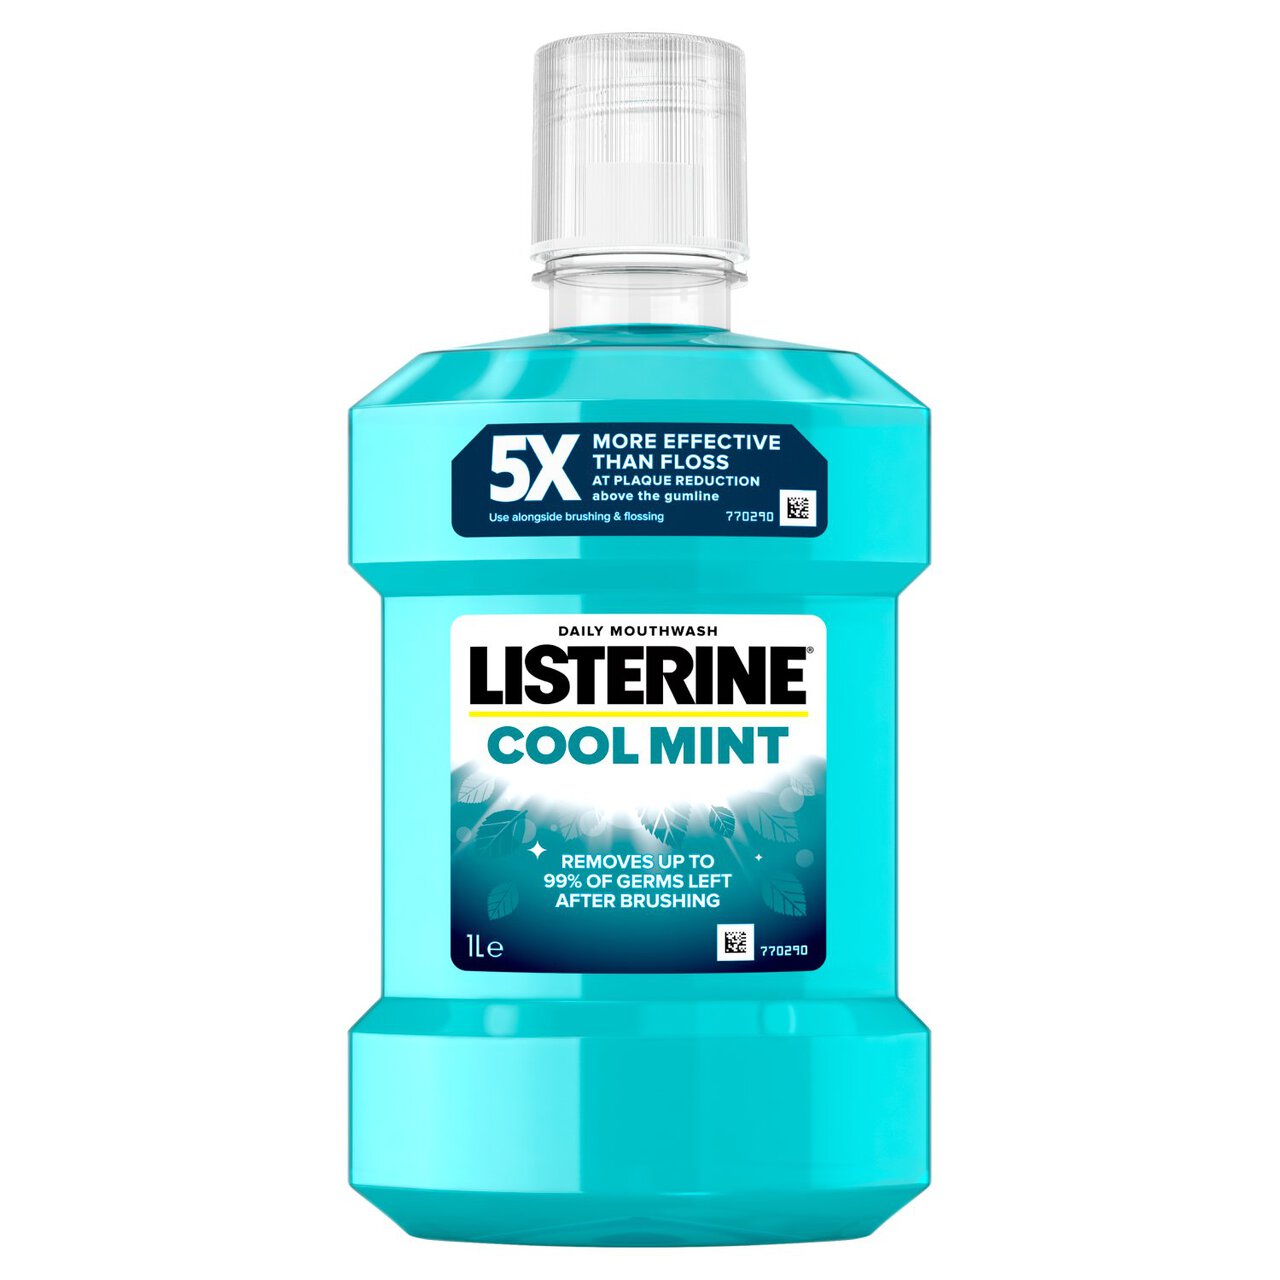 Listerine Cool Mint Mouthwash 1l